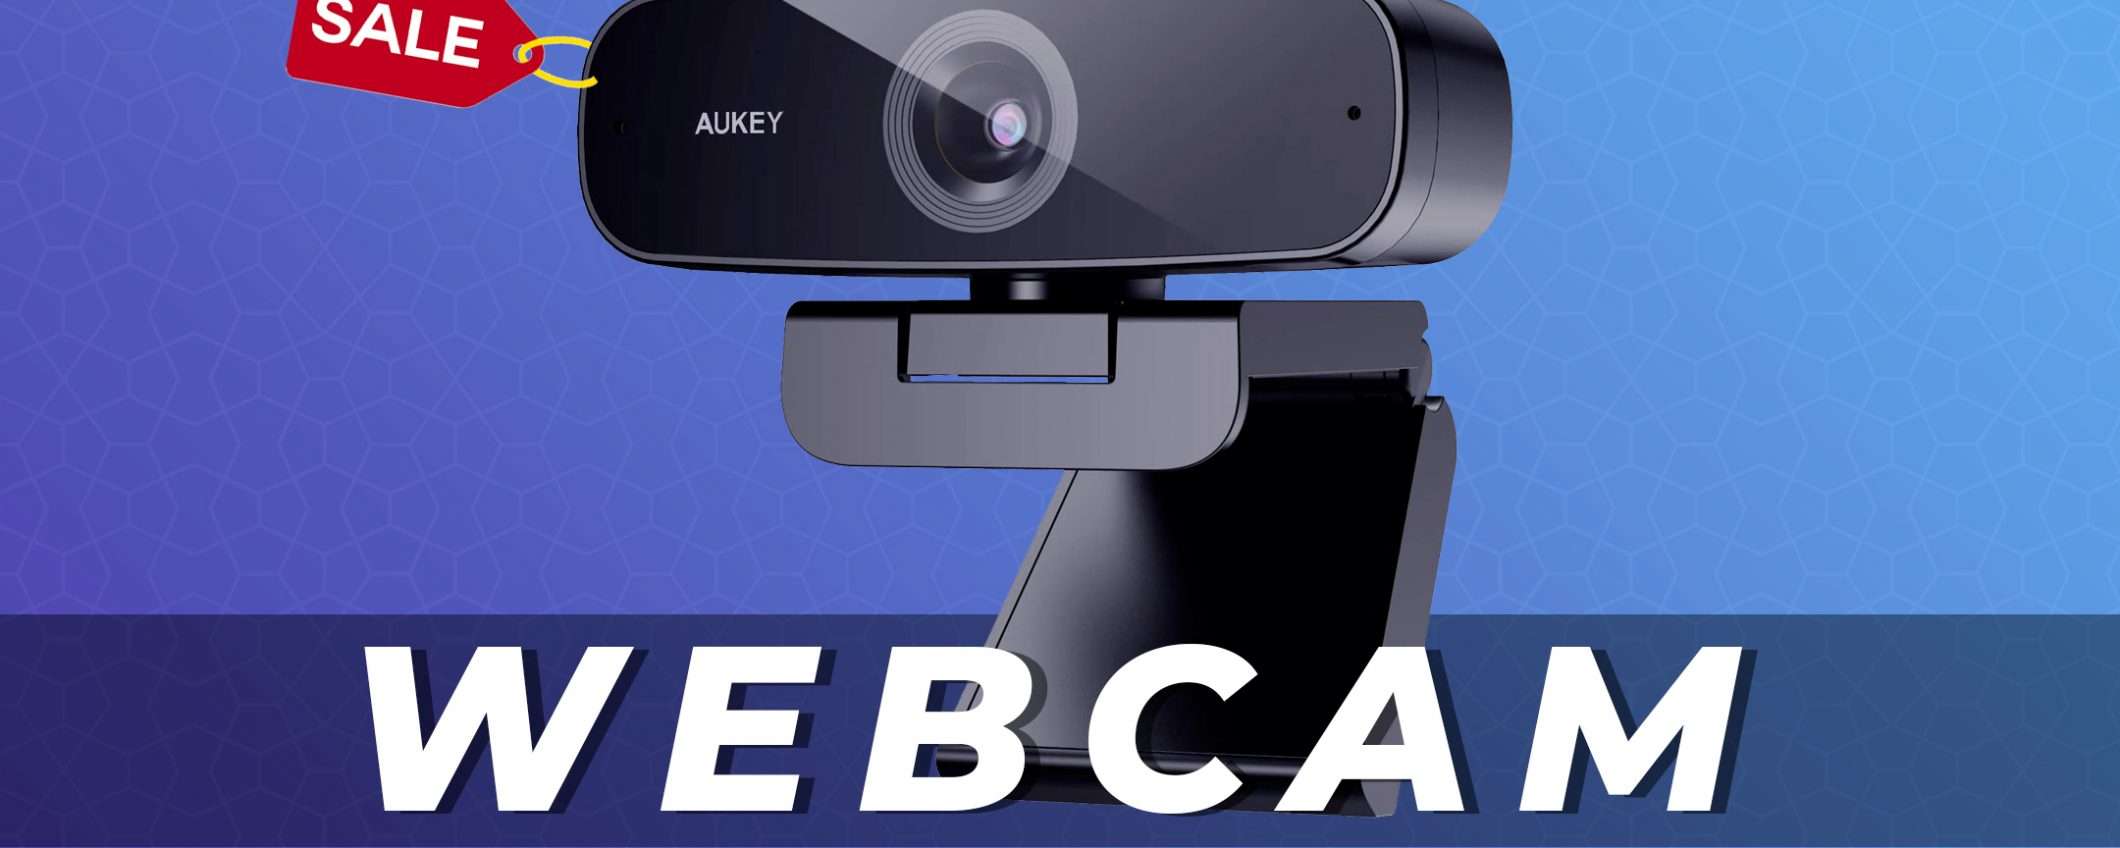 Webcam 1080P AUKEY in offerta su Amazon con questo coupon